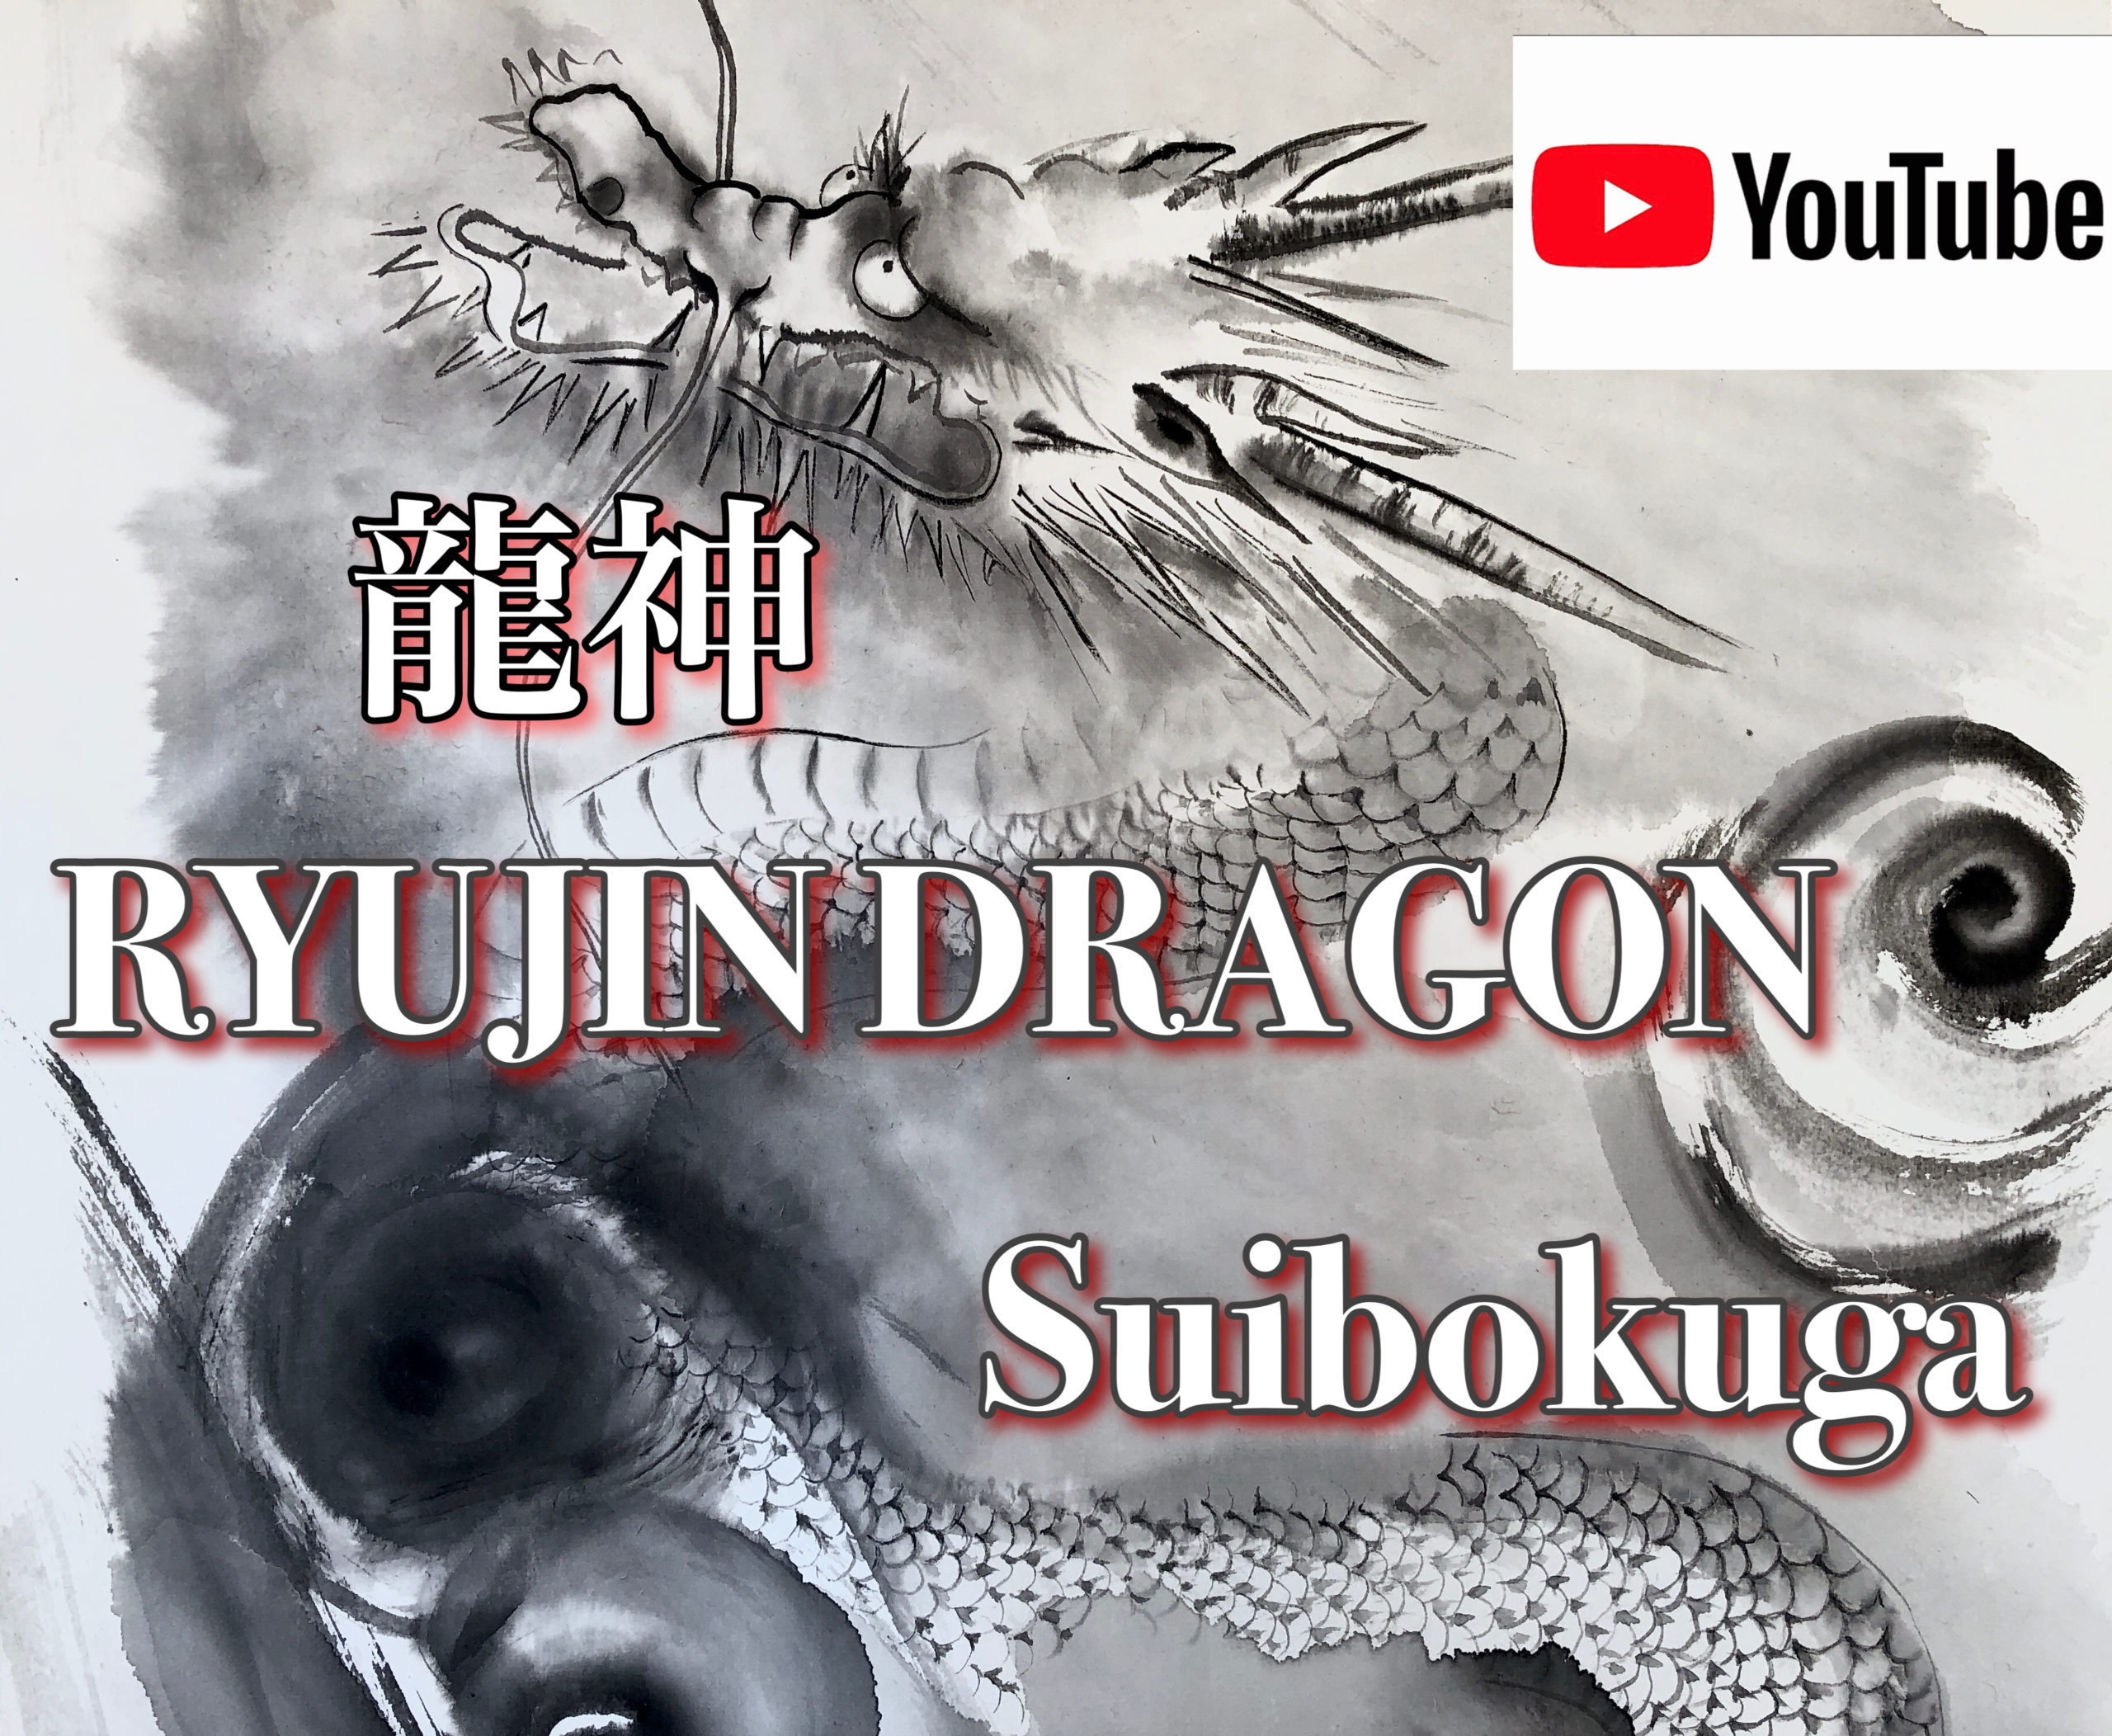 YouTube How to draw RYUJIN 龍神 dragon Suibokuga